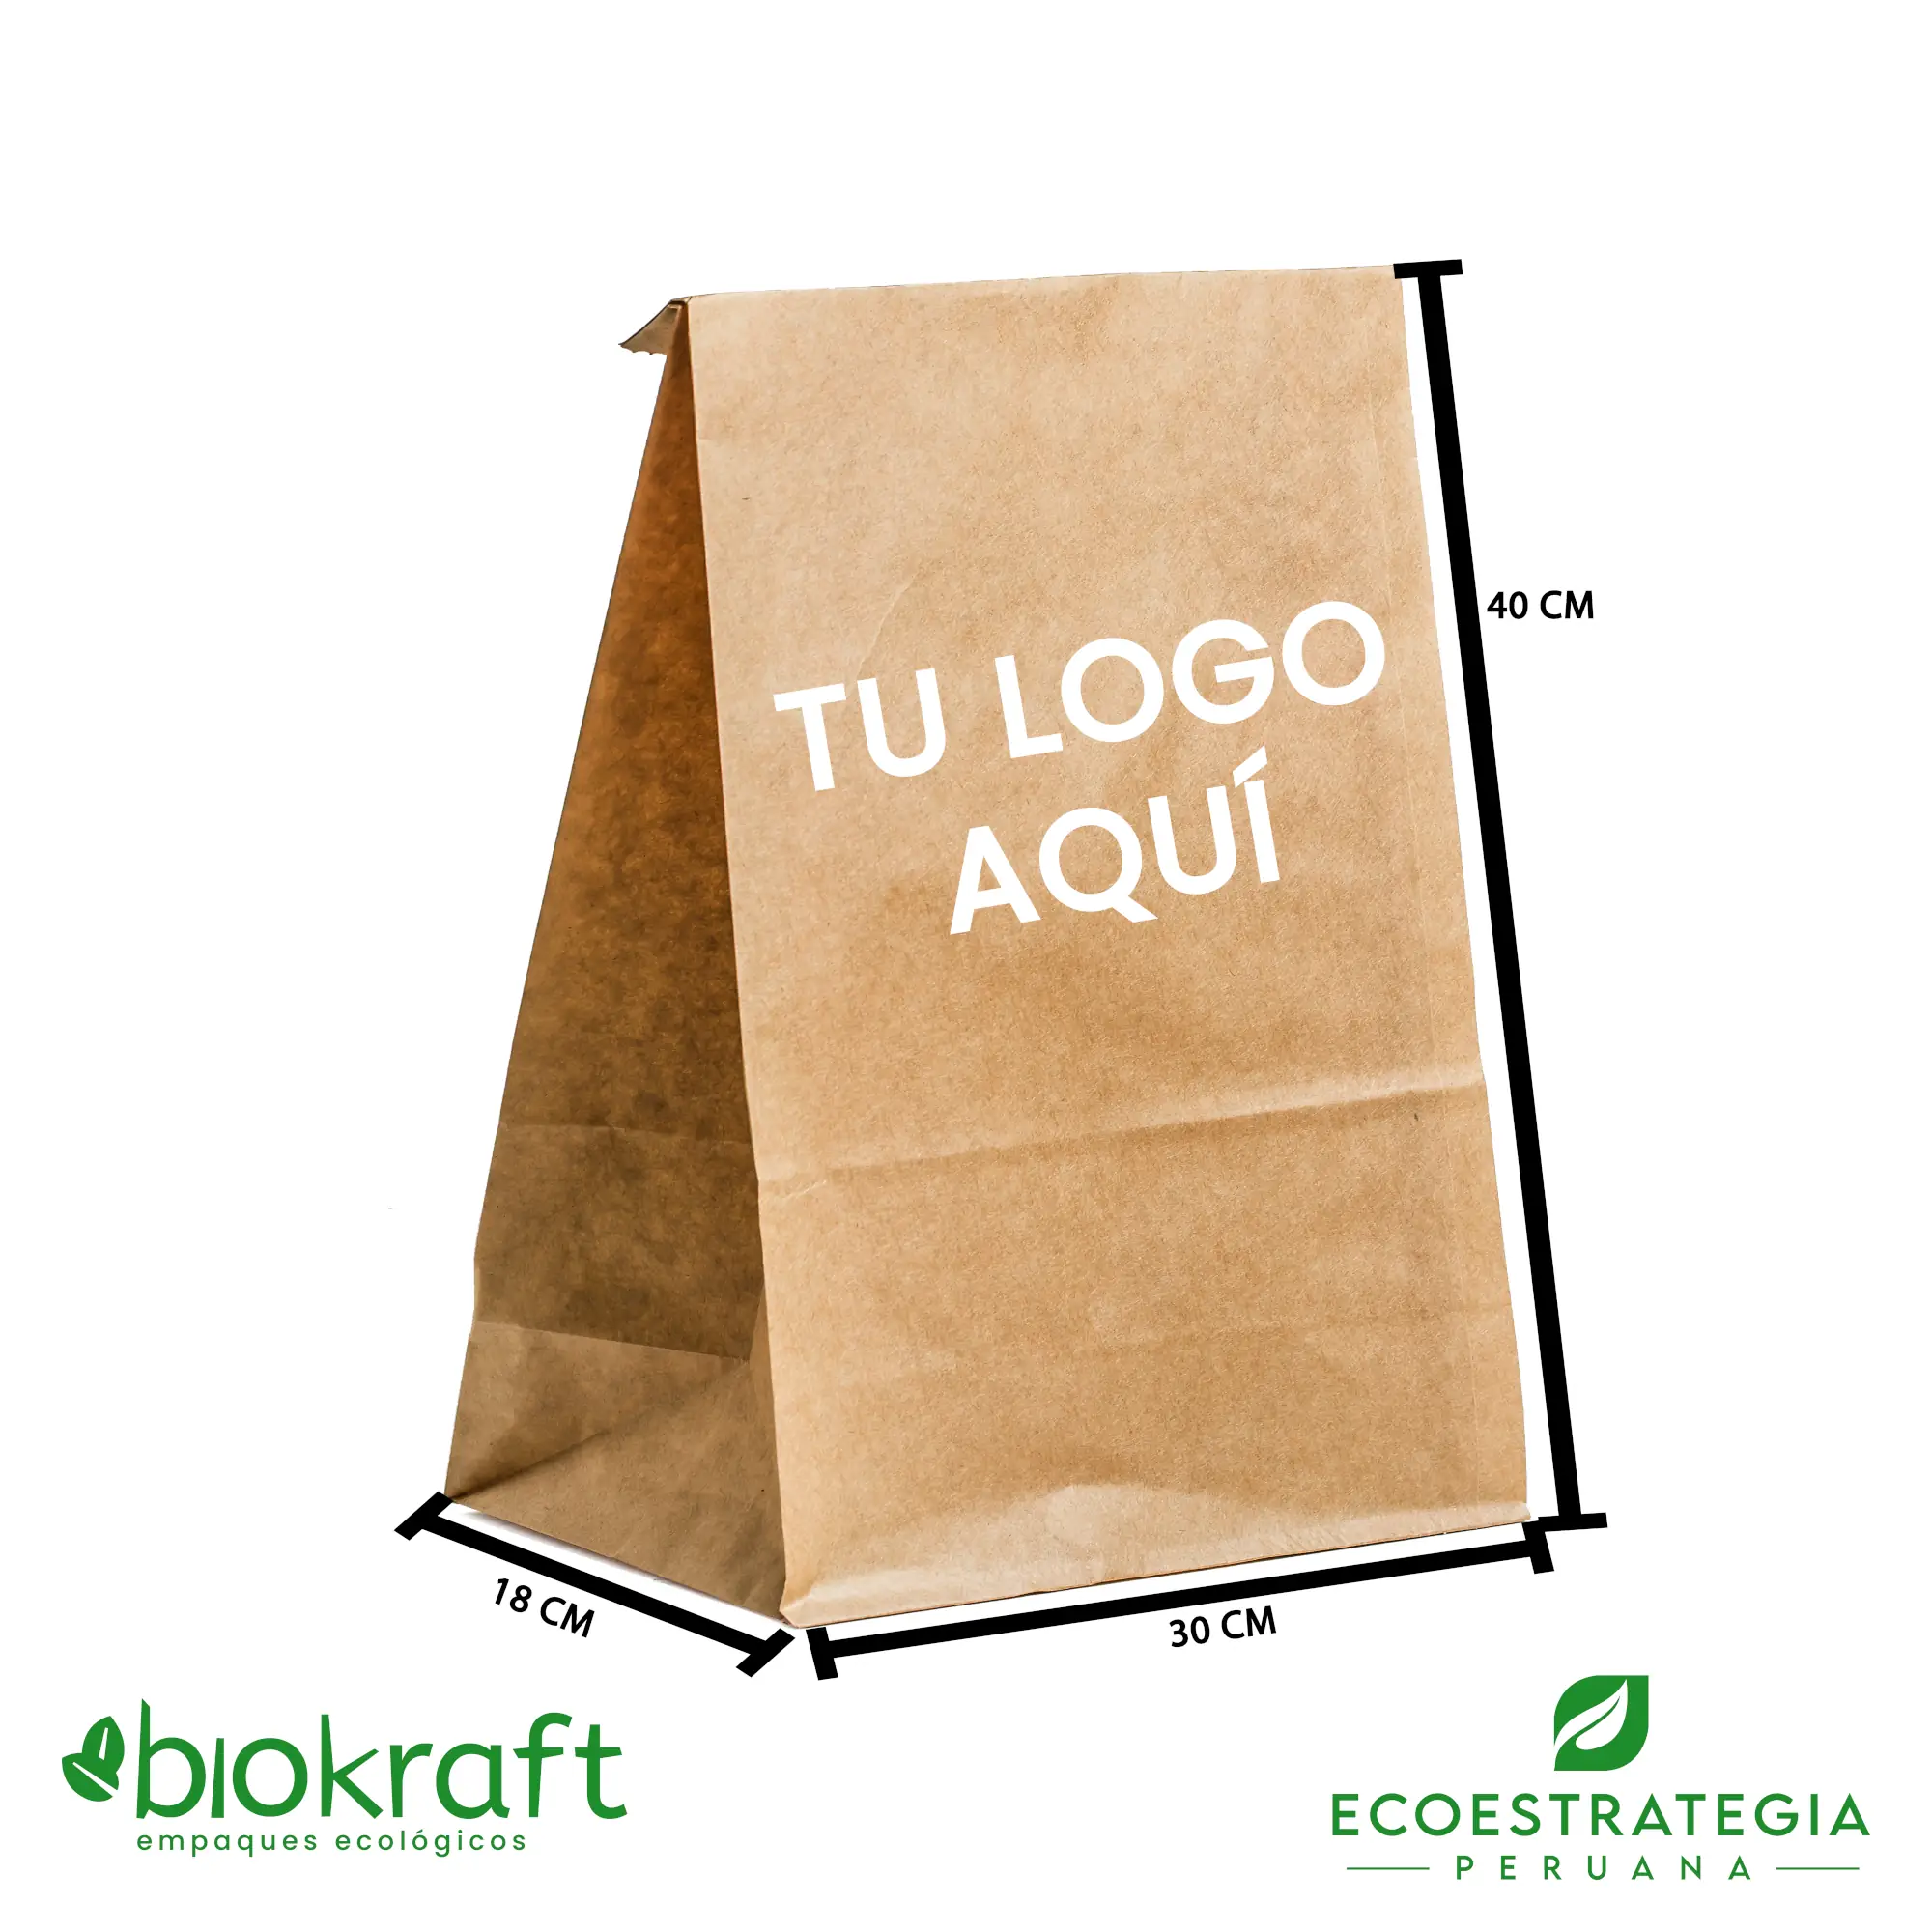 Esta bolsa de papel Kraft tiene un grosor de 80 gr y un peso de 48gr. Bolsa biodegradable de excelente gramaje y medida, ideal para comidas y productos ligeros. Cotiza ahora tus bolsas Kraft número 40